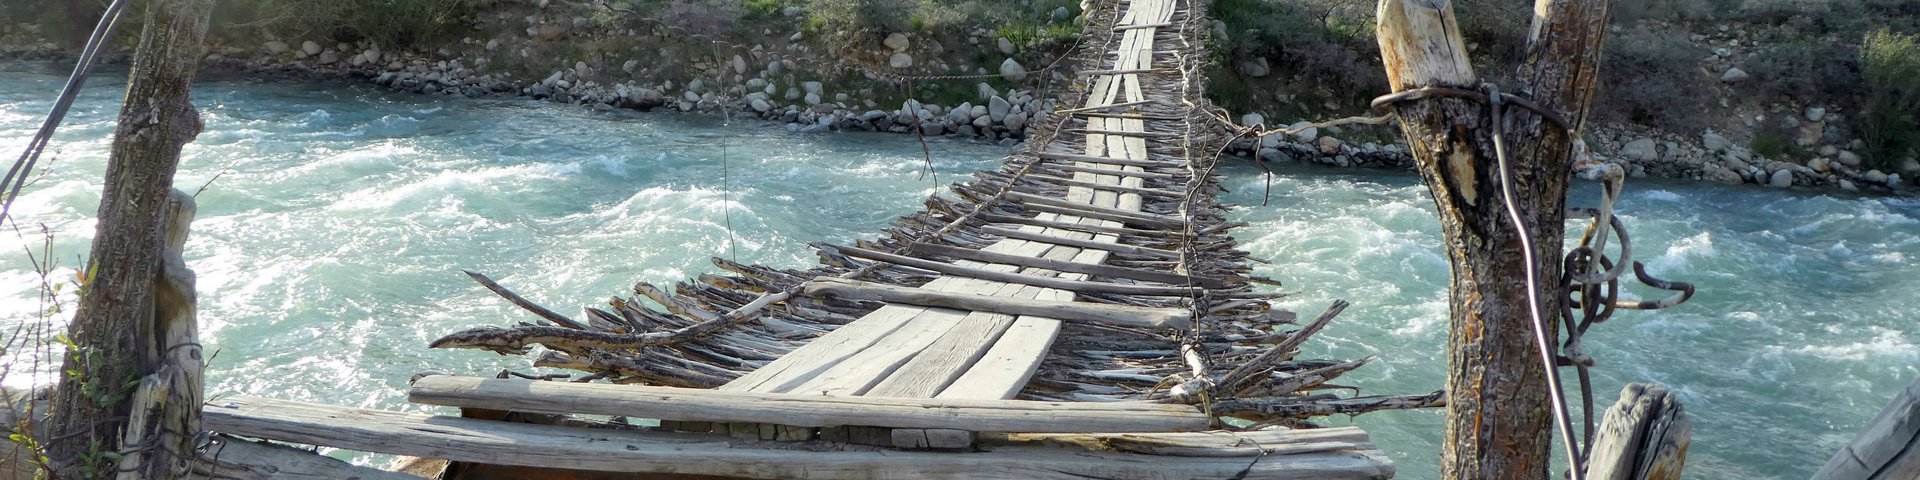 Einfache Brücke über einen Fluss im Pamir-Gebirge in Tadschikistan